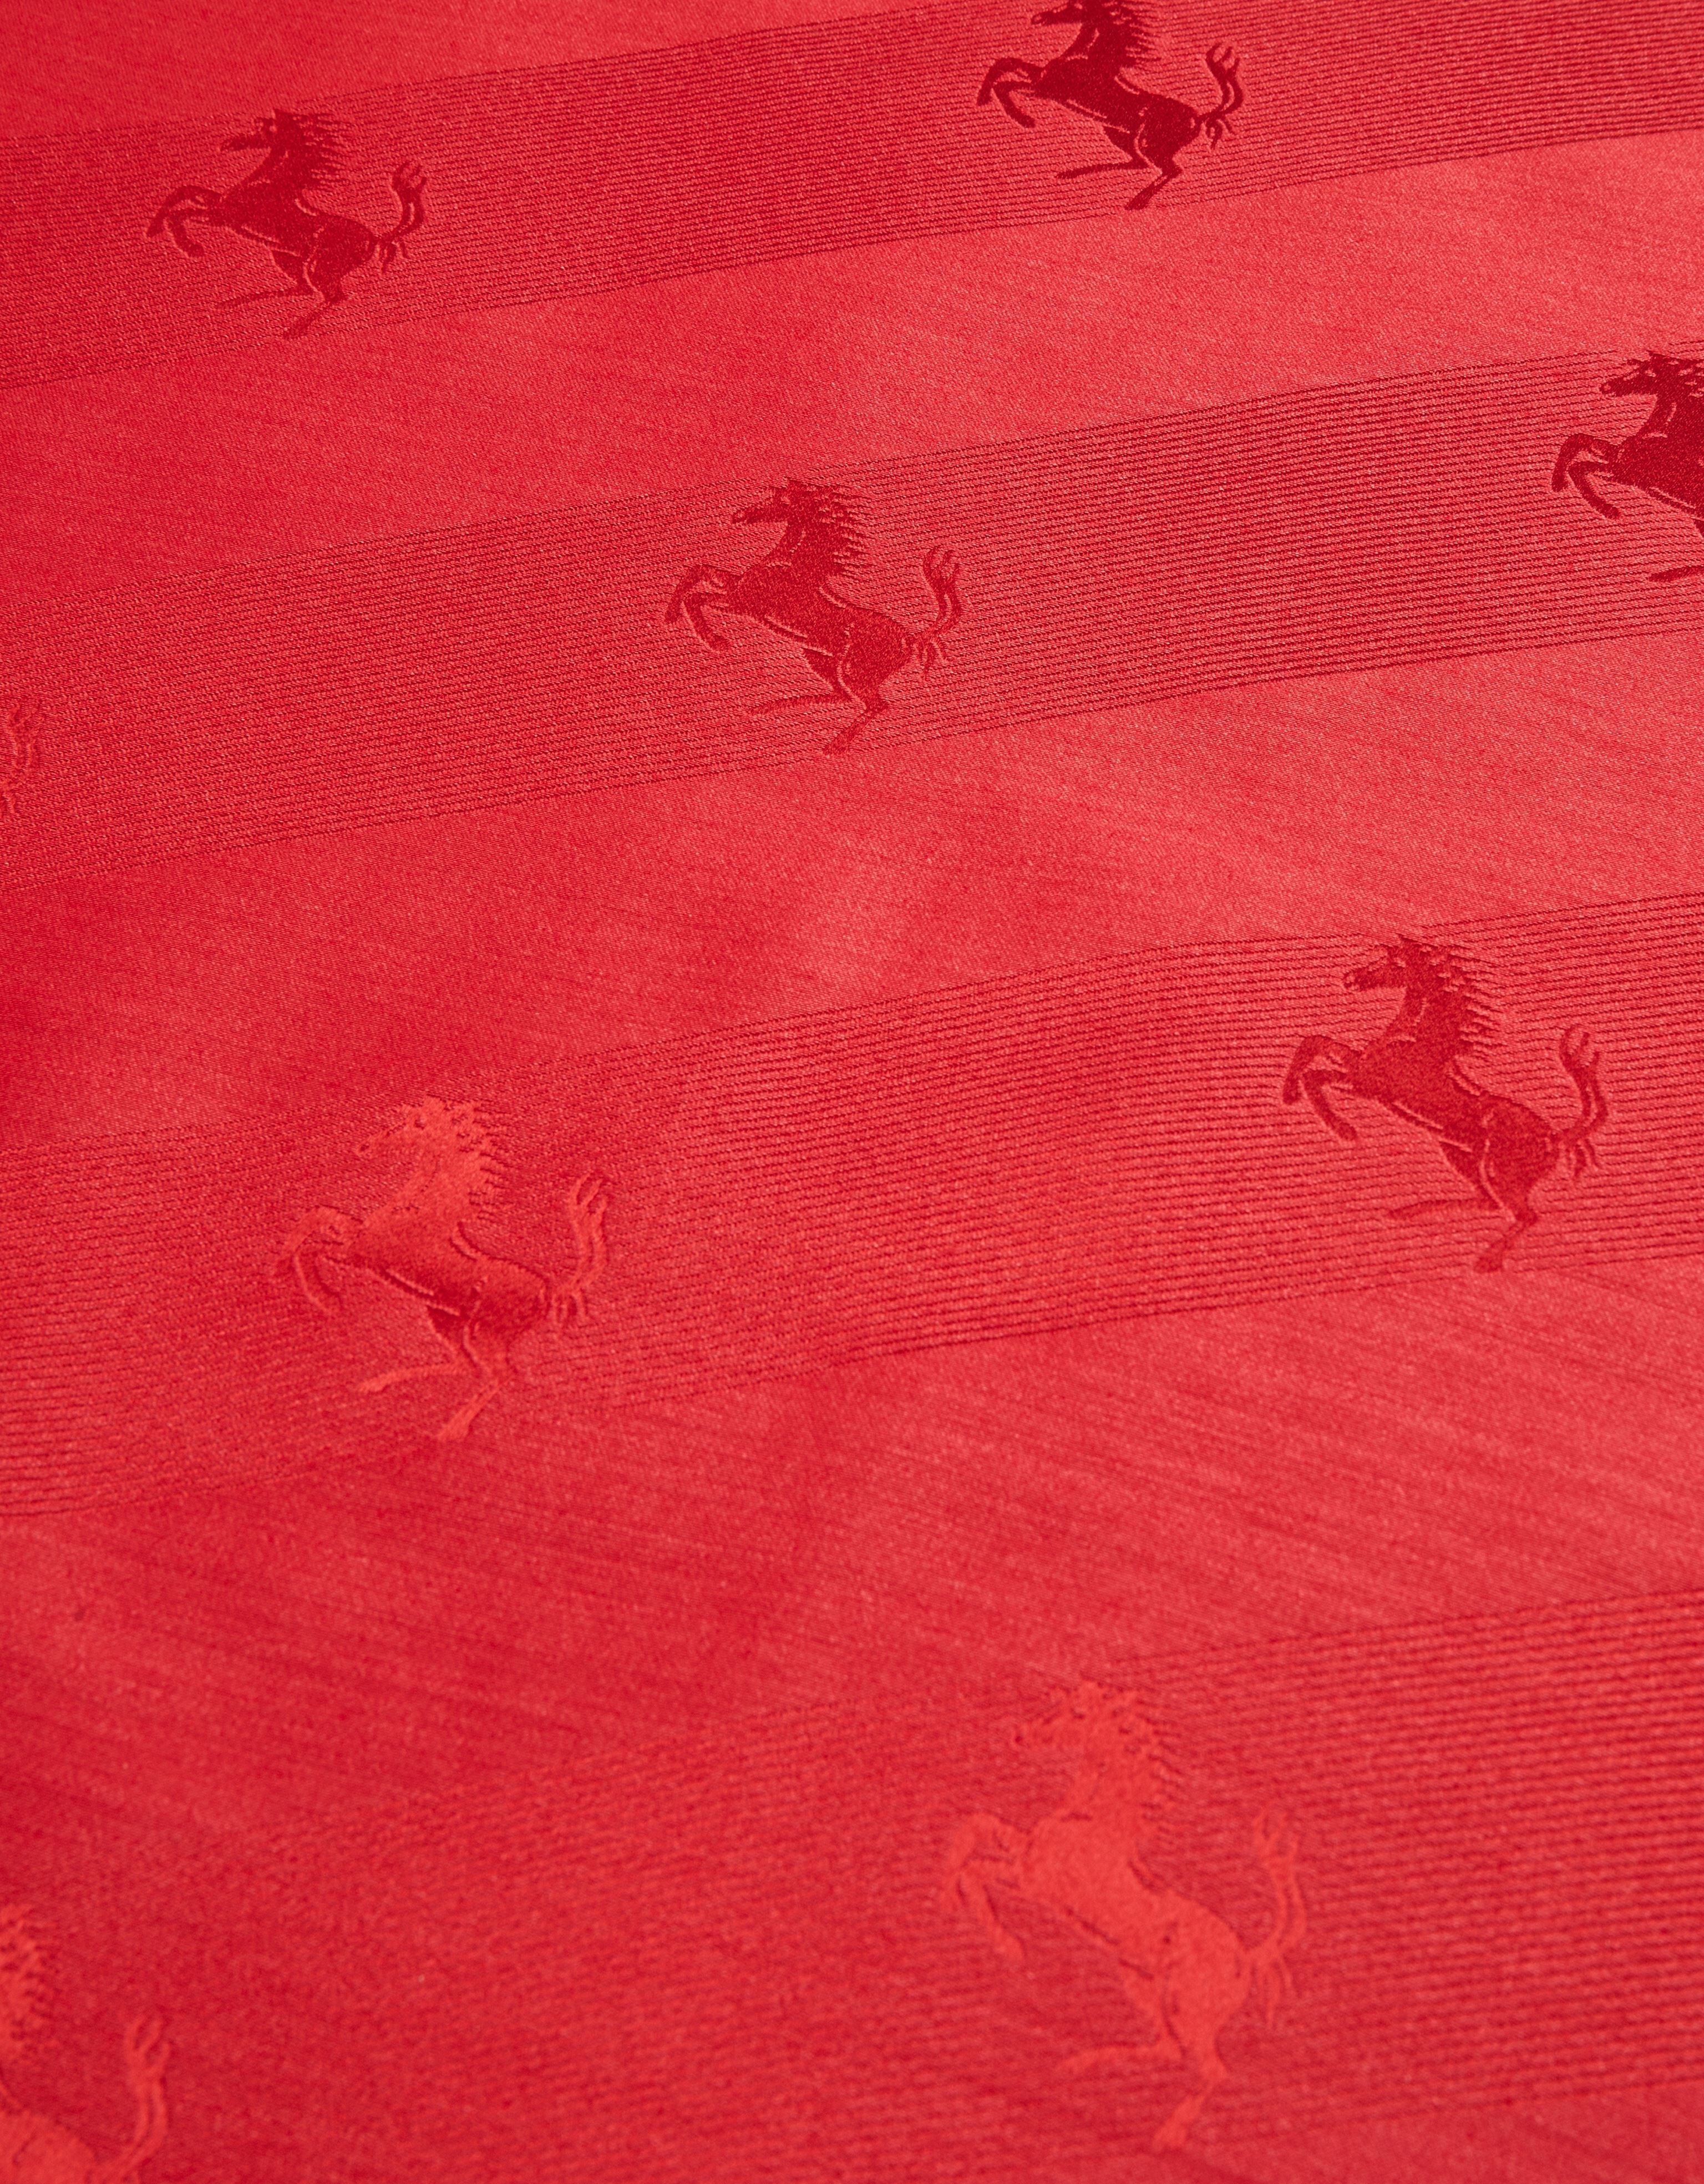 Ferrari 跃马图案羊毛与真丝围巾 Rosso Corsa 红色 47072f